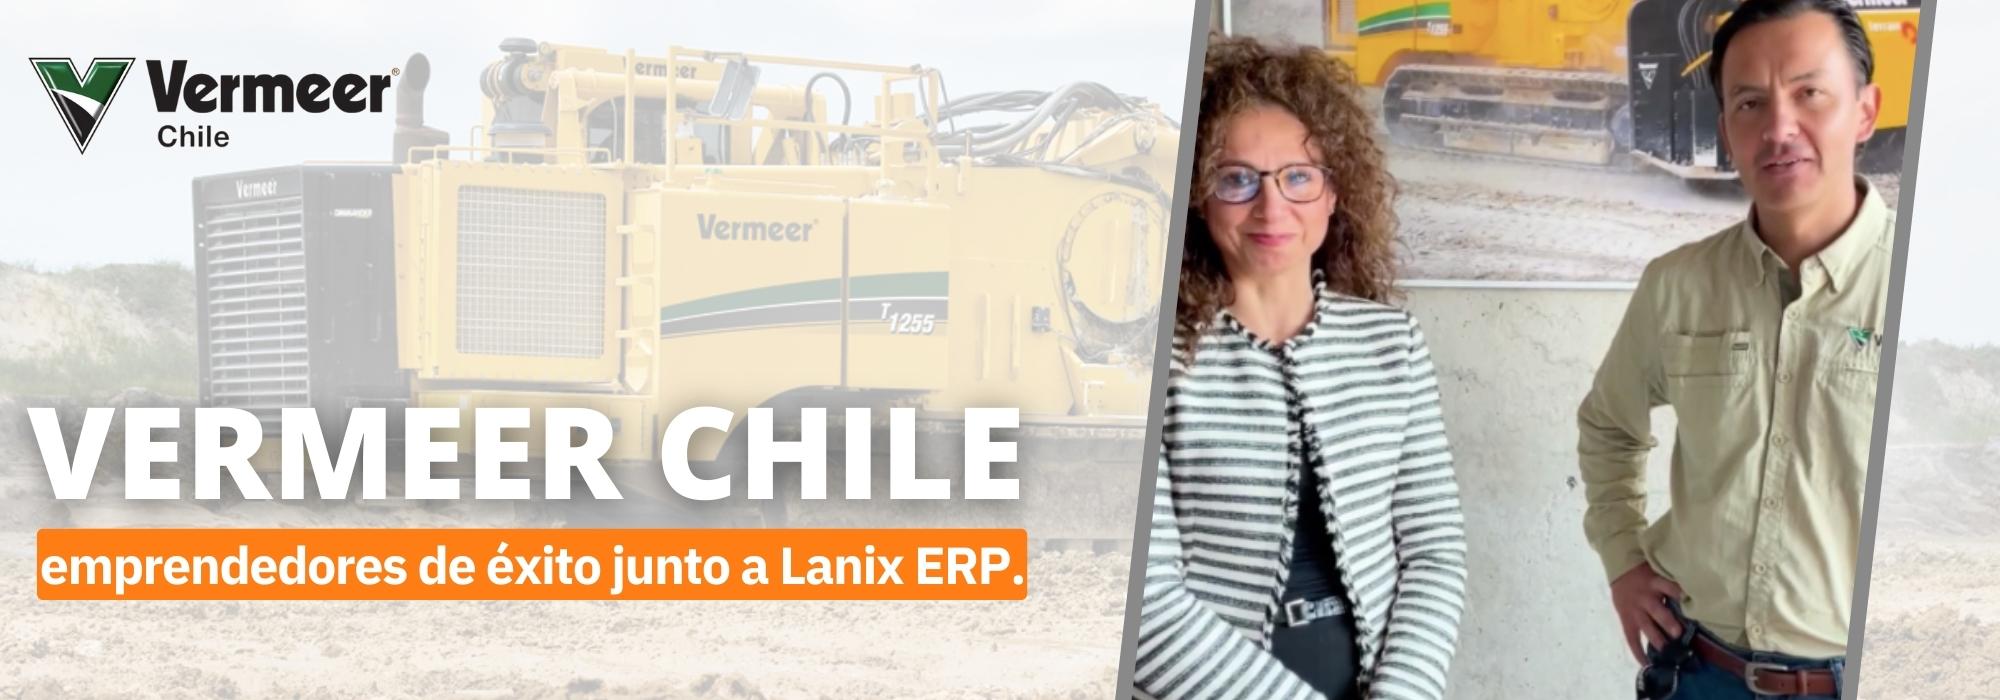 Vermeer Chile y Lanix ERP